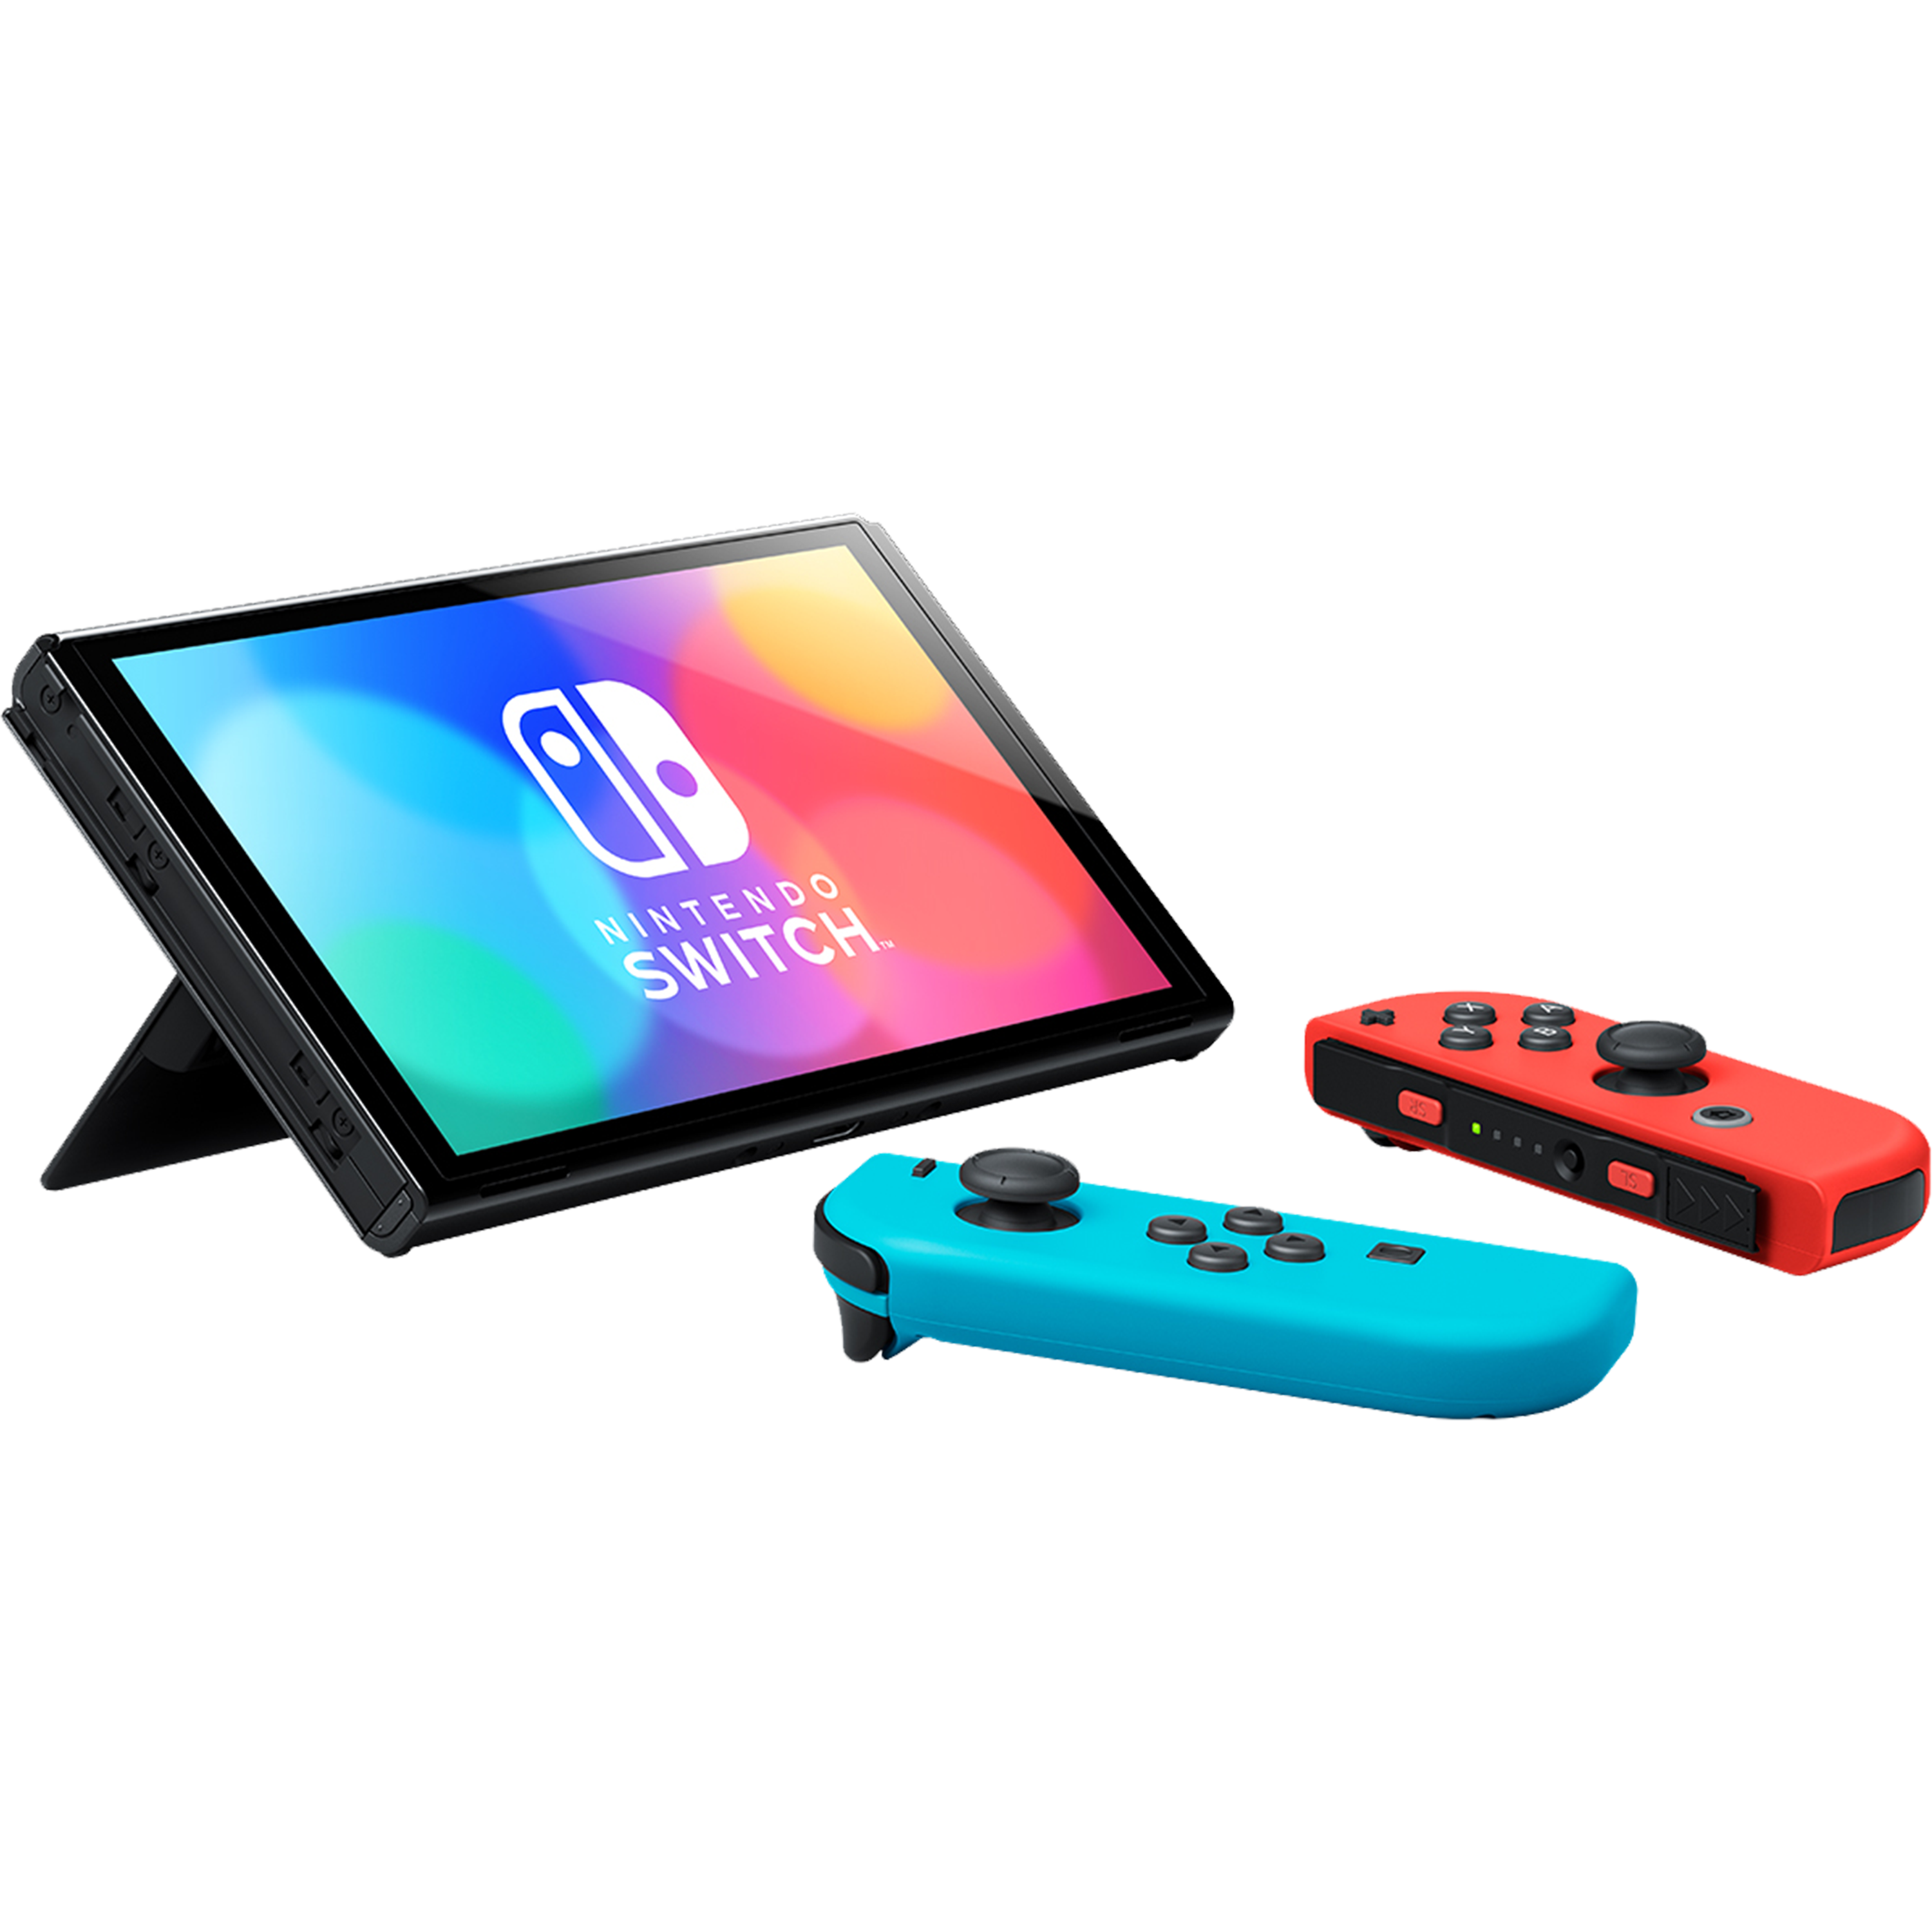 באנדל קונסולת Nintendo Switch OLED הכולל משחק Mario Kart 8 Deluxe ומנוי Nintendo Switch Online ל-3 חודשים - צבע כחול ואדום שנתיים אחריות ע